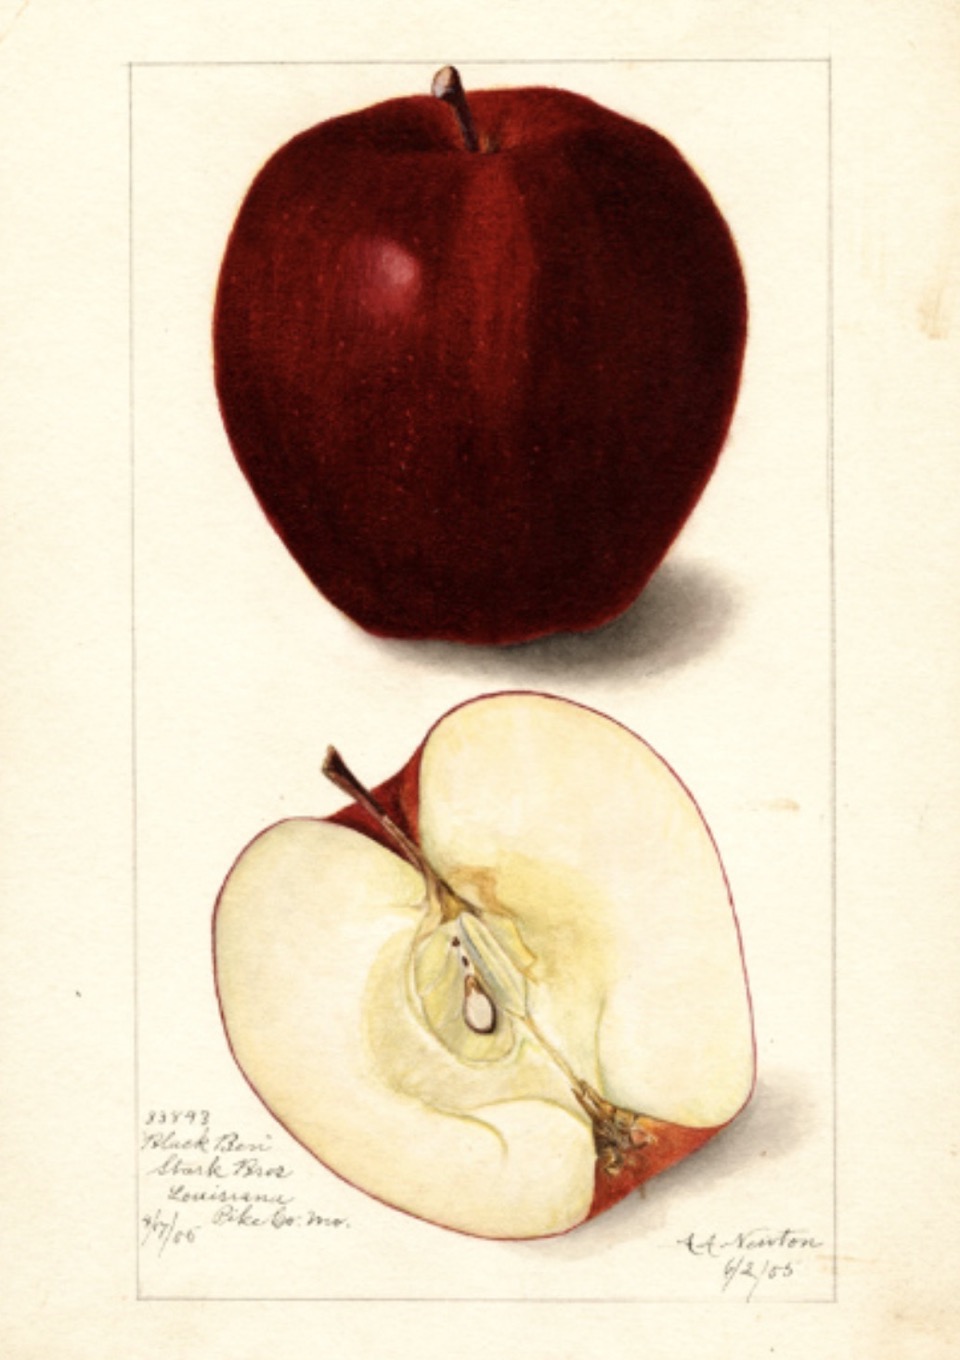 Historische Abbildung eines dunkelroten und eines aufgeschnittenen Apfels; USDA